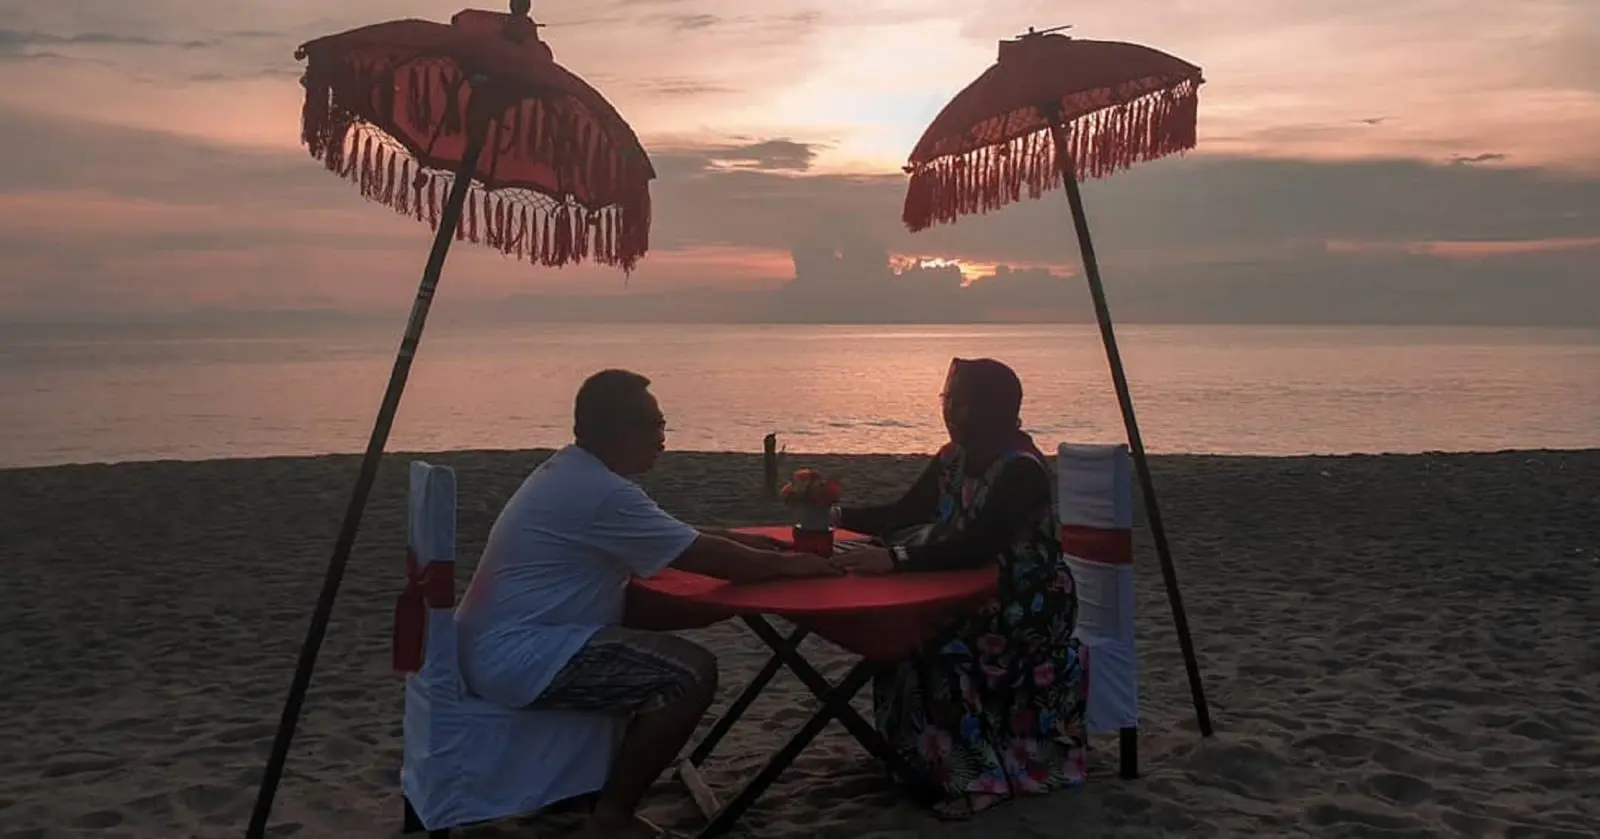 Menikmati romantisnya suasana momen terbenamnya matahari di cakrawala laut Pantai Senggigi Lombok Barat NTB - koko_brengs